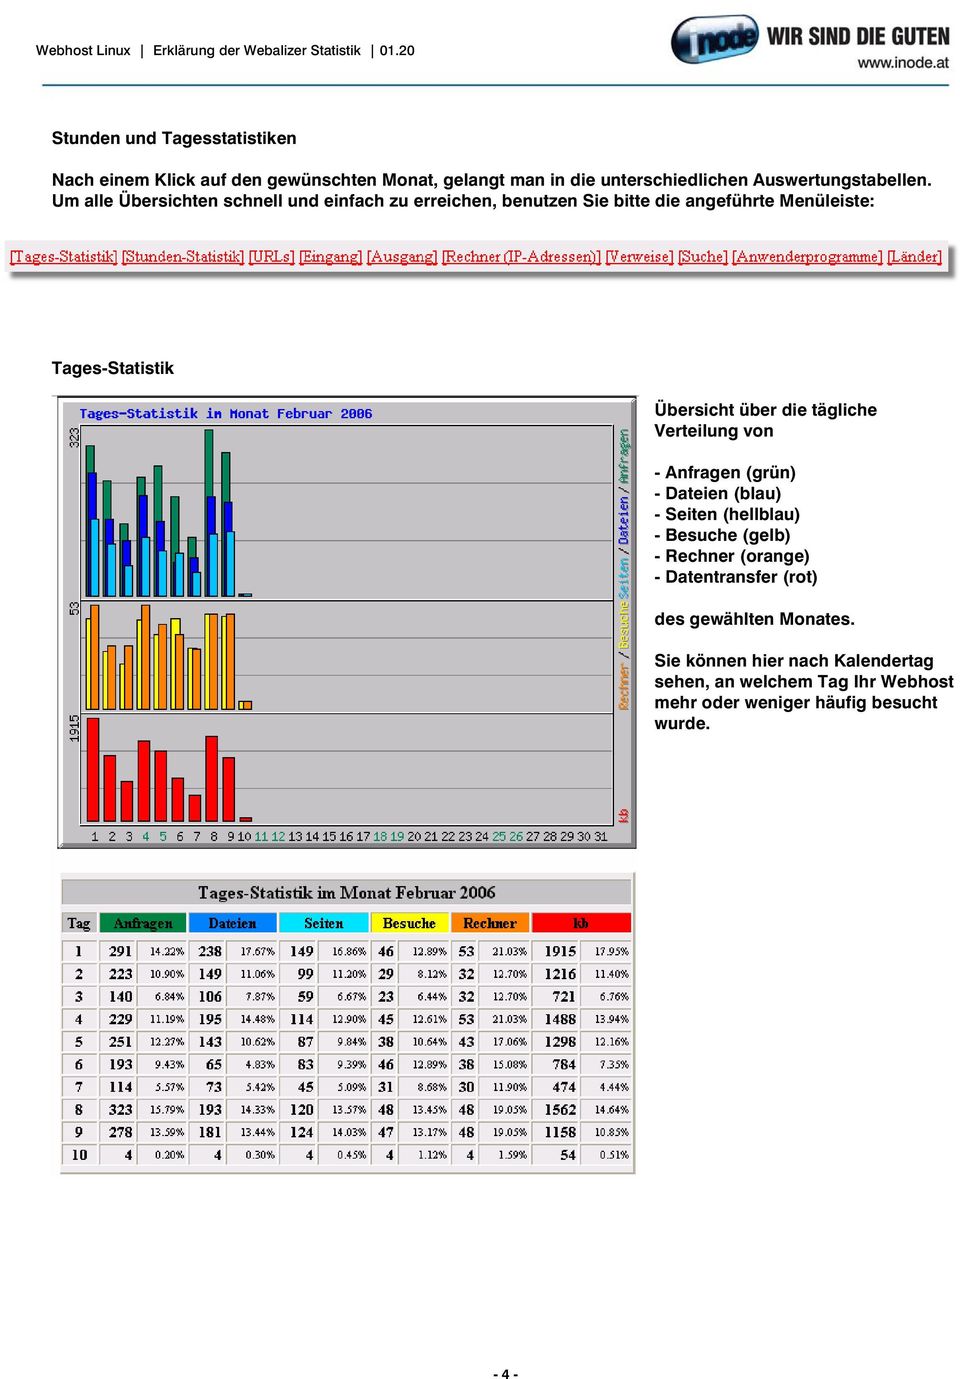 tägliche Verteilung von - Anfragen (grün) - Dateien (blau) - Seiten (hellblau) - Besuche (gelb) - Rechner (orange) - Datentransfer